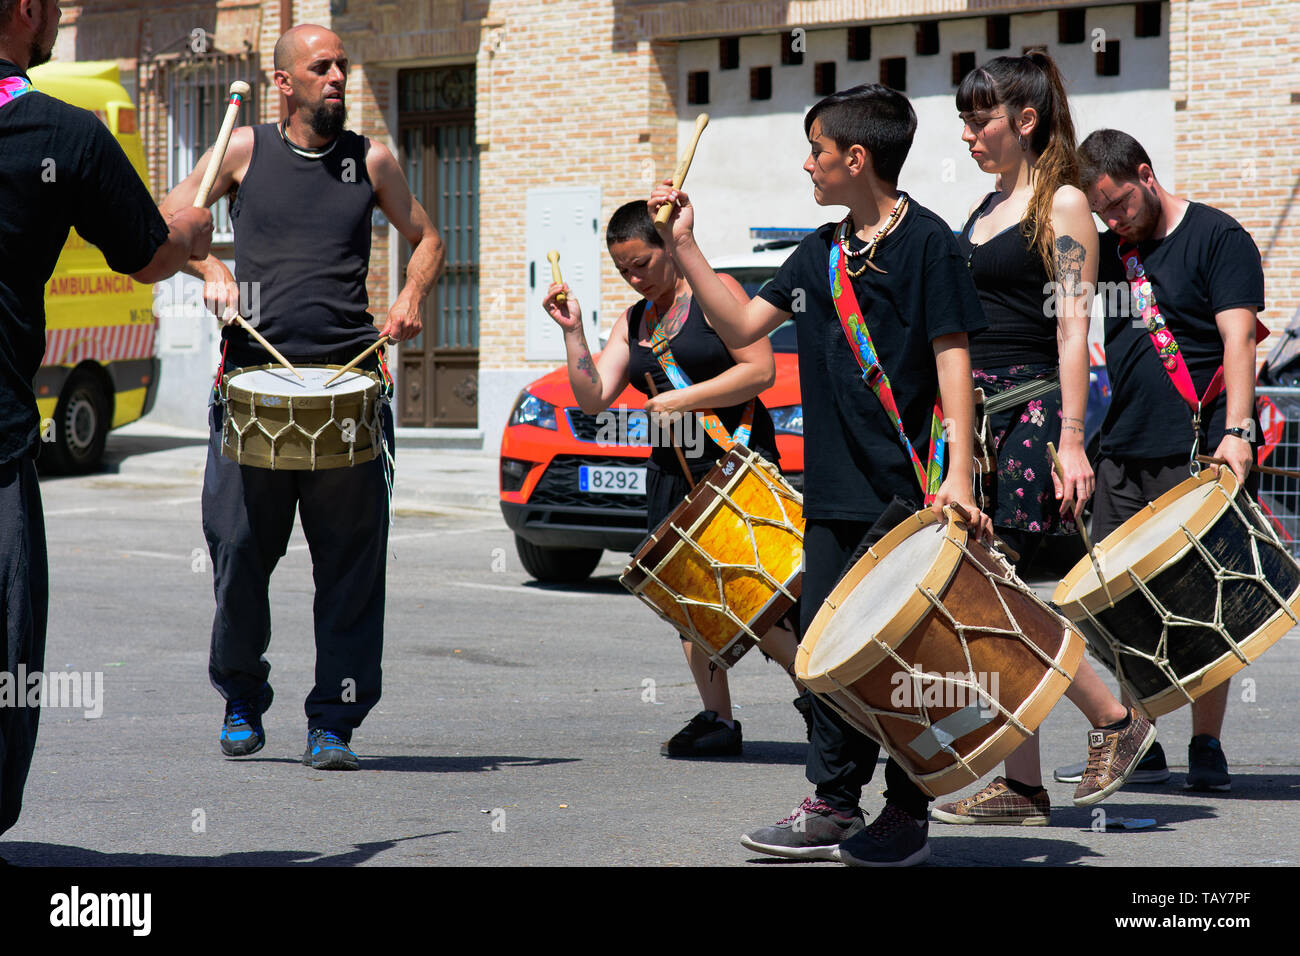 Marché médiéval. El Alamo en 2019. Un groupe de musiciens de rue encourage le public avec batterie Banque D'Images